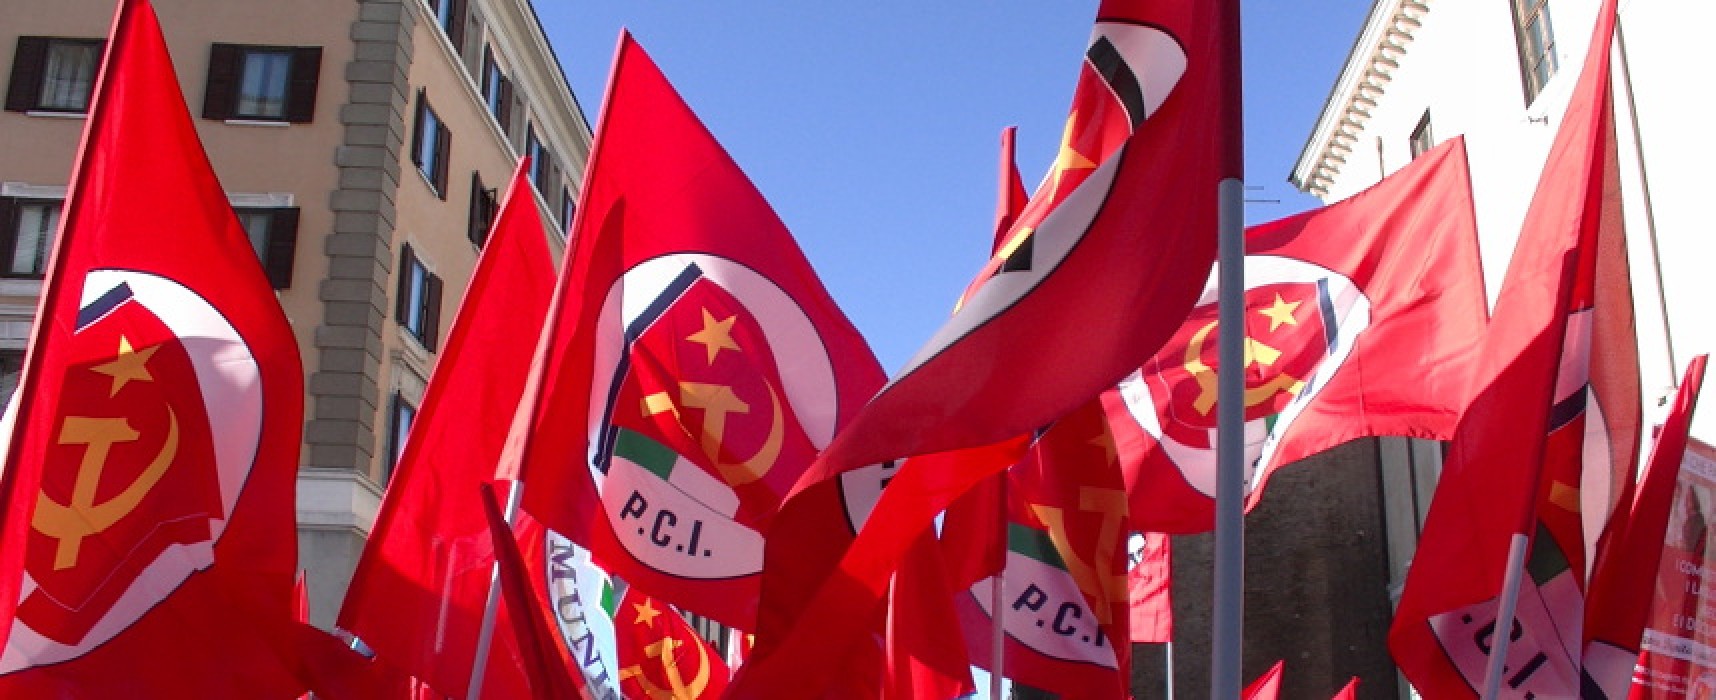 Partito Comunista non presente alle Europee, sezione cittadina: “Doveroso andare alle urne”